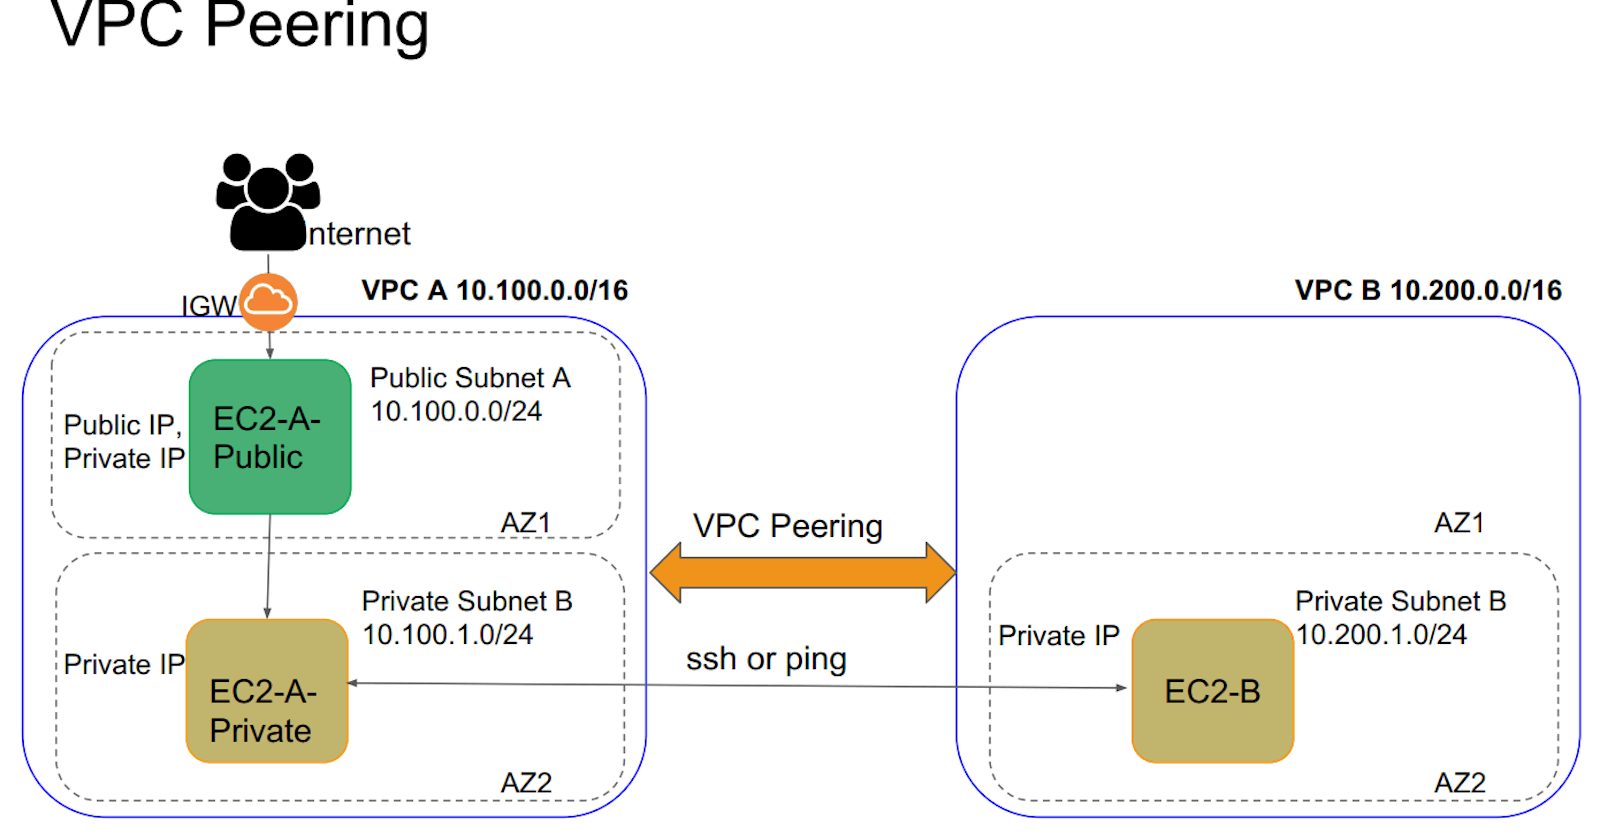 VPC Peering